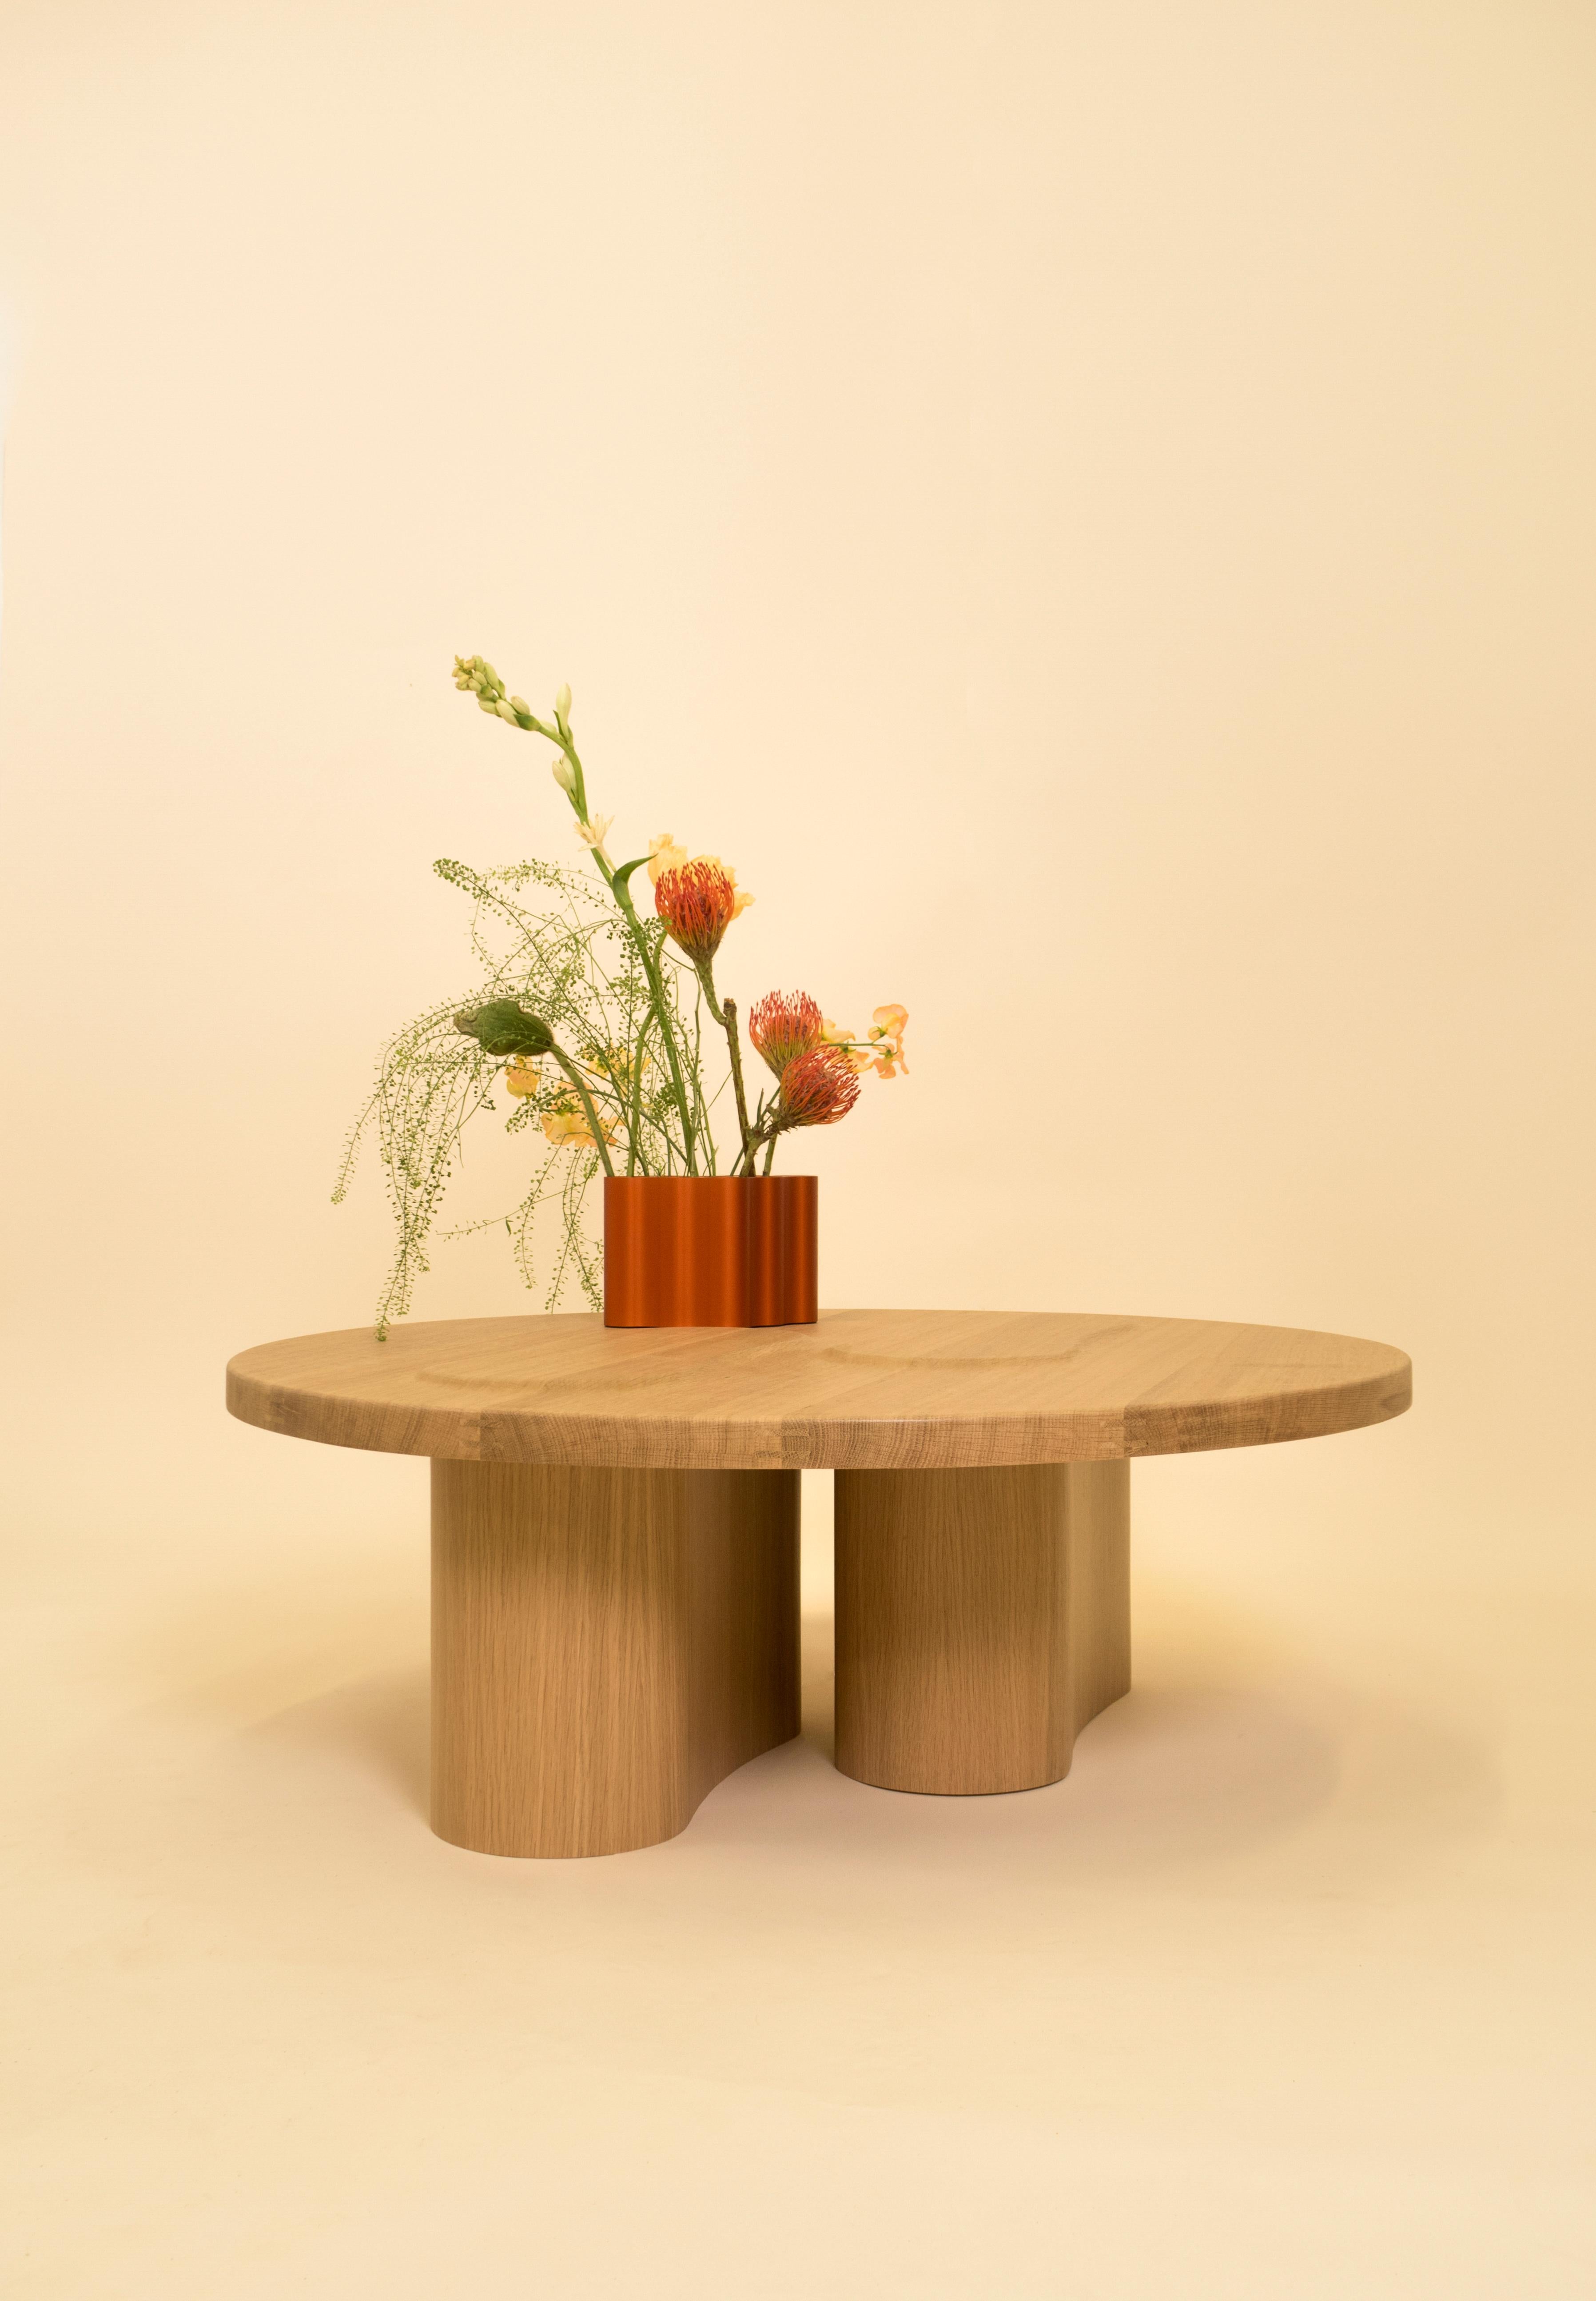 Table basse en chêne massif et placage de Helder Barbosa
MATERIAL : Chêne, placage
Dimensions : D 94 x H 31 cm

Vase 